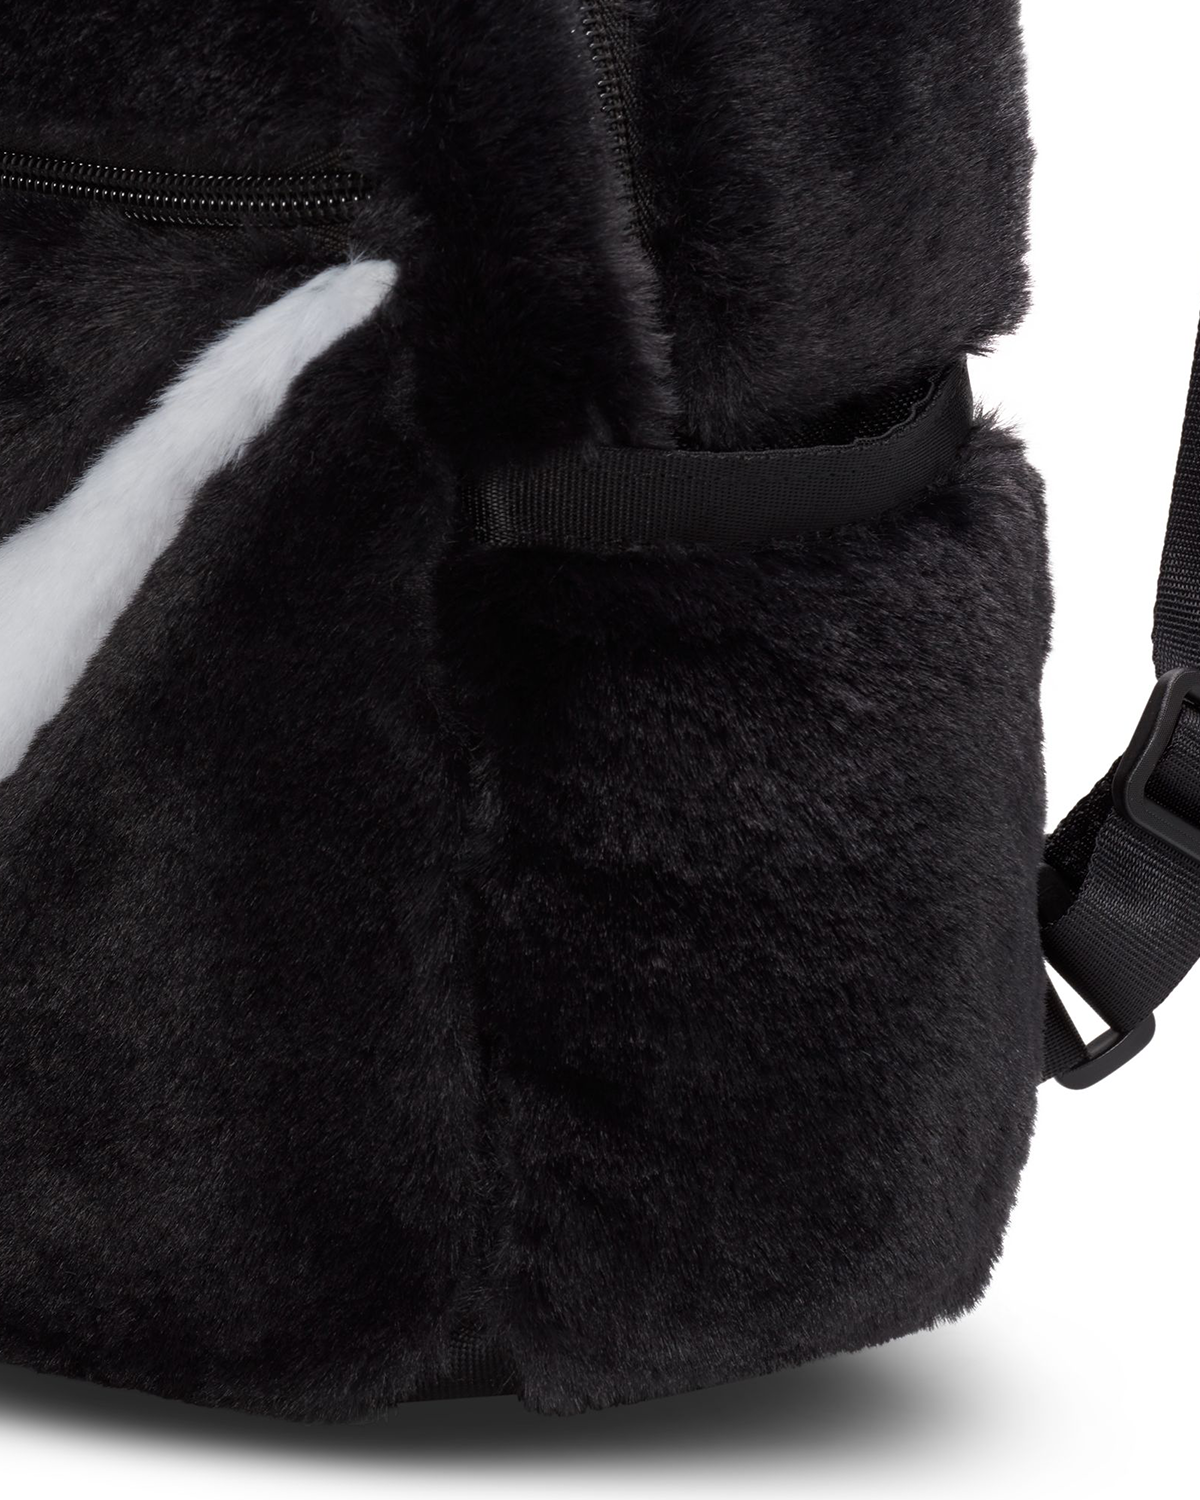 Sportswear Futura 365 Backpack Black/White